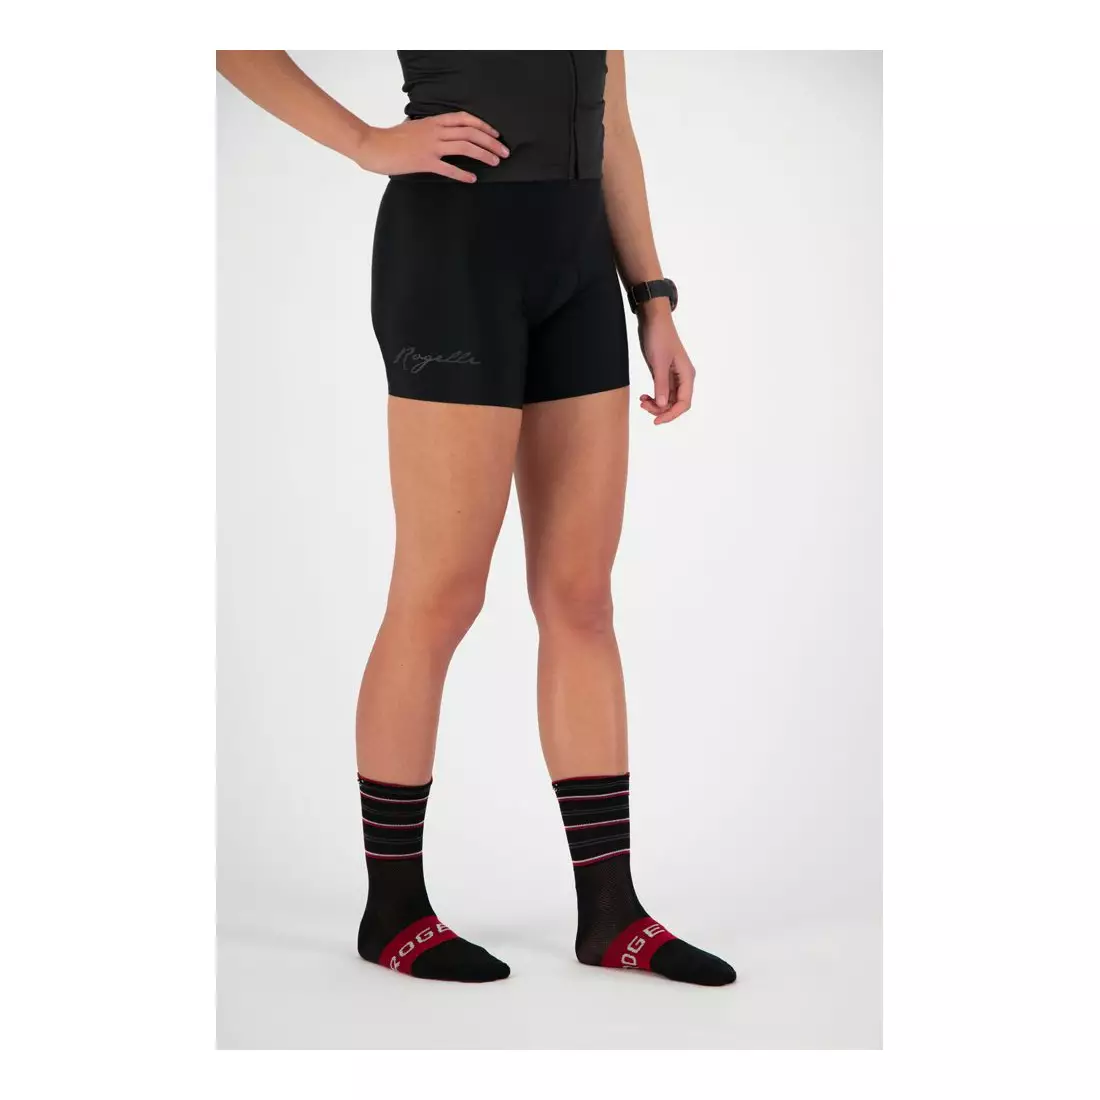 ROGELLI women's cycling socks STRIPE red